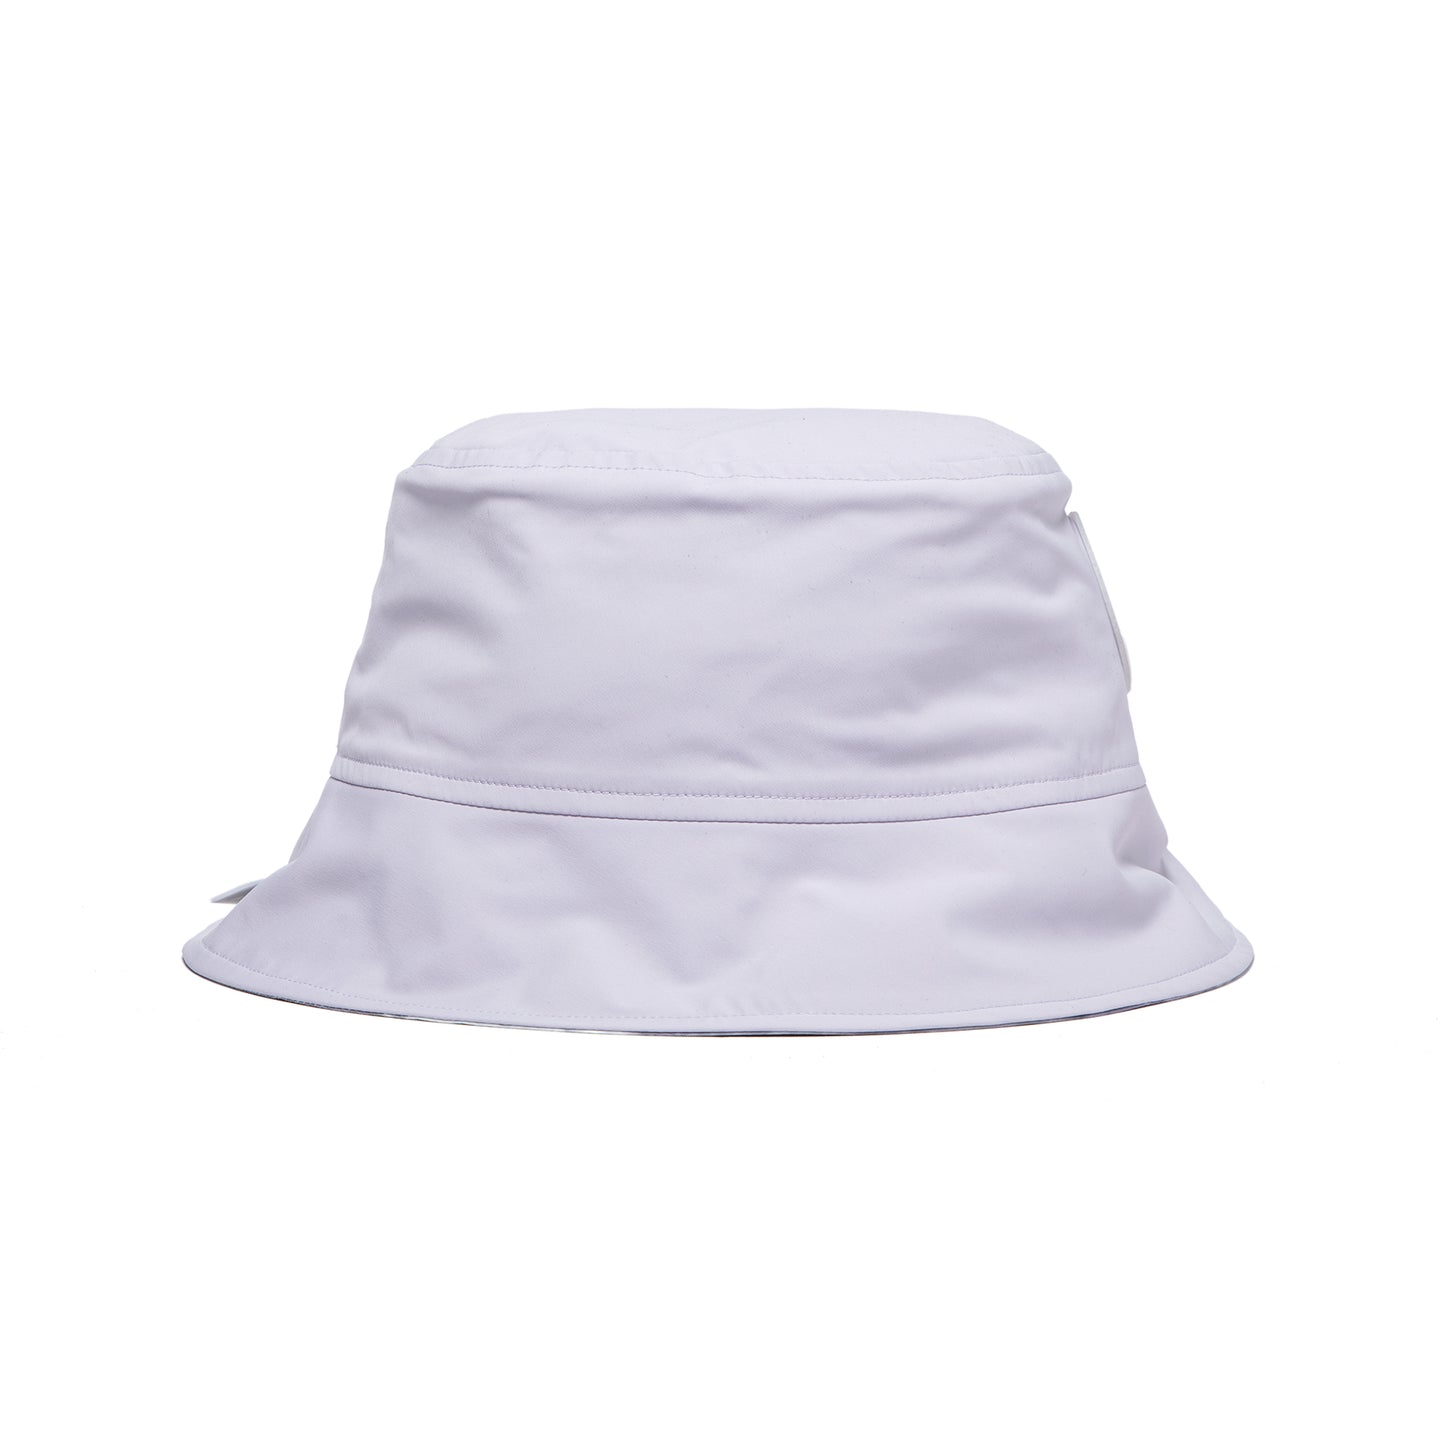 Canada Goose Horizon Reversible Bucket Hat (Location Camo)